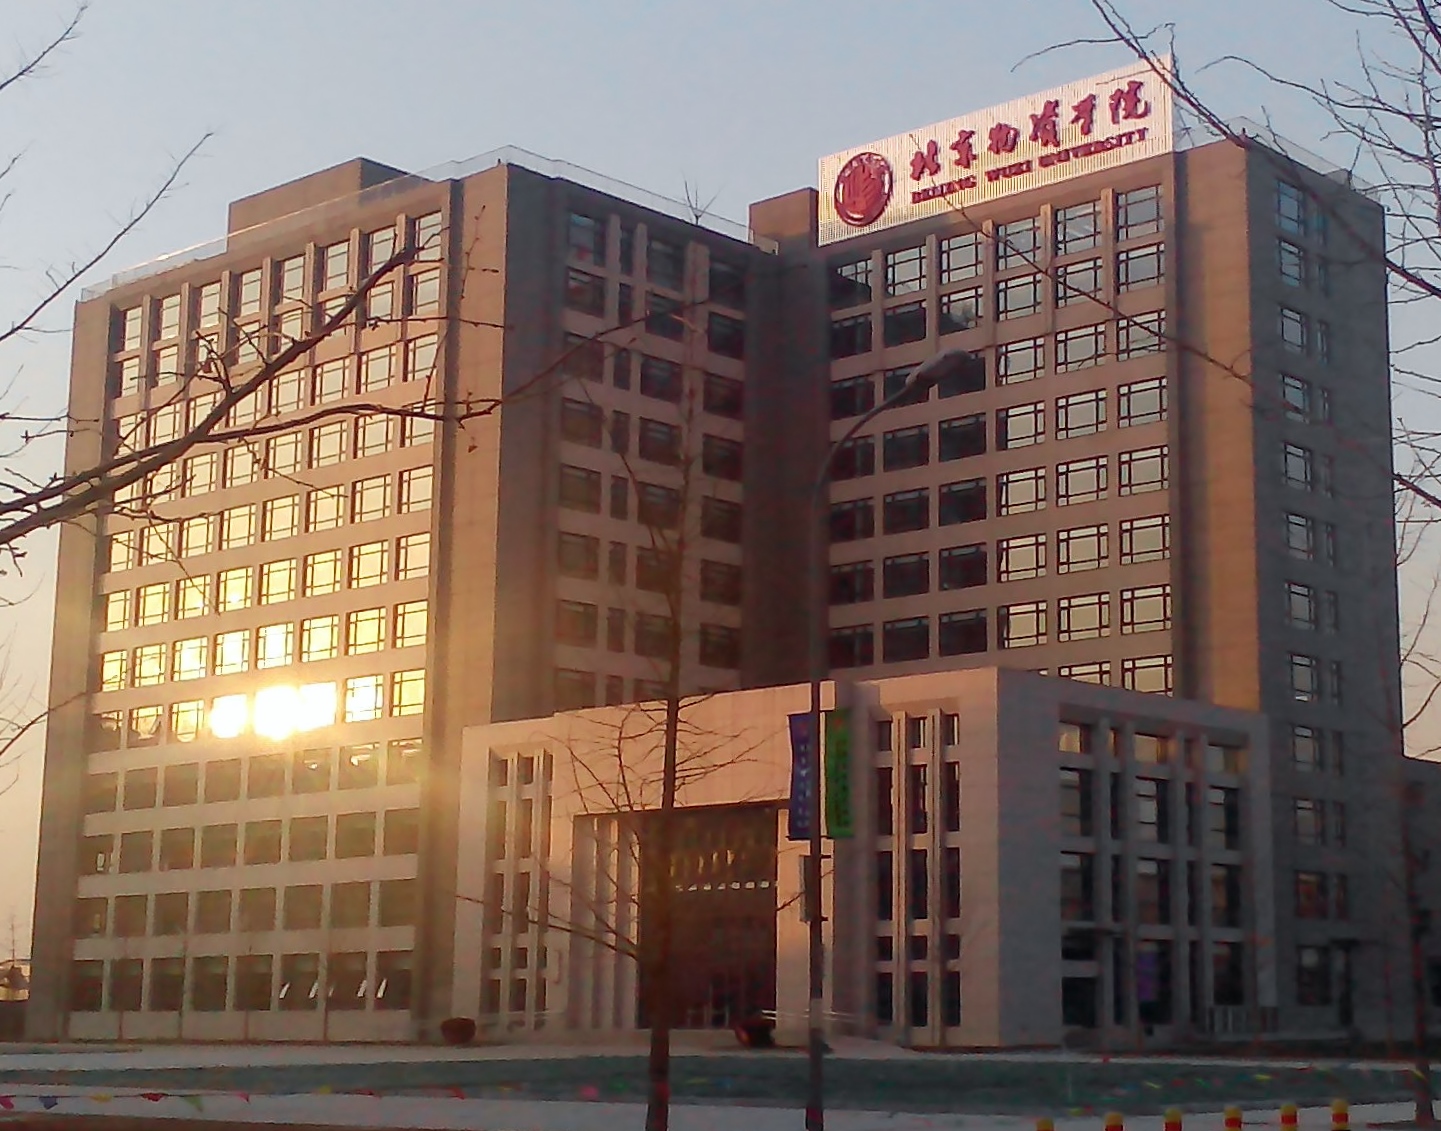 北京物资学院照片图片